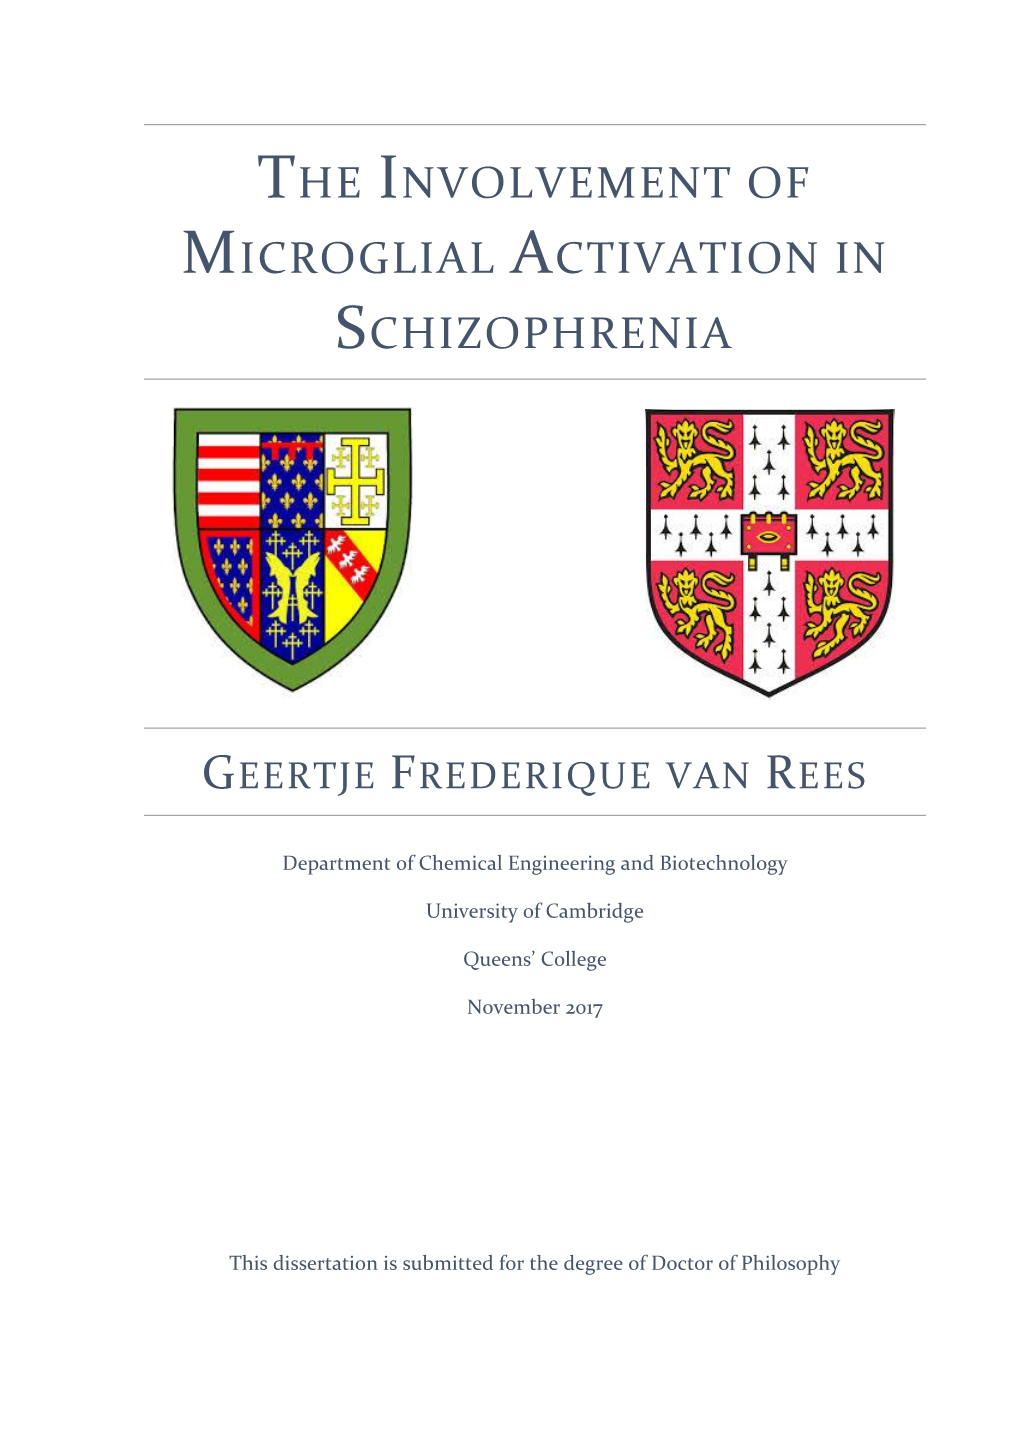 The Involvement of Microglial Activation in Schizophrenia